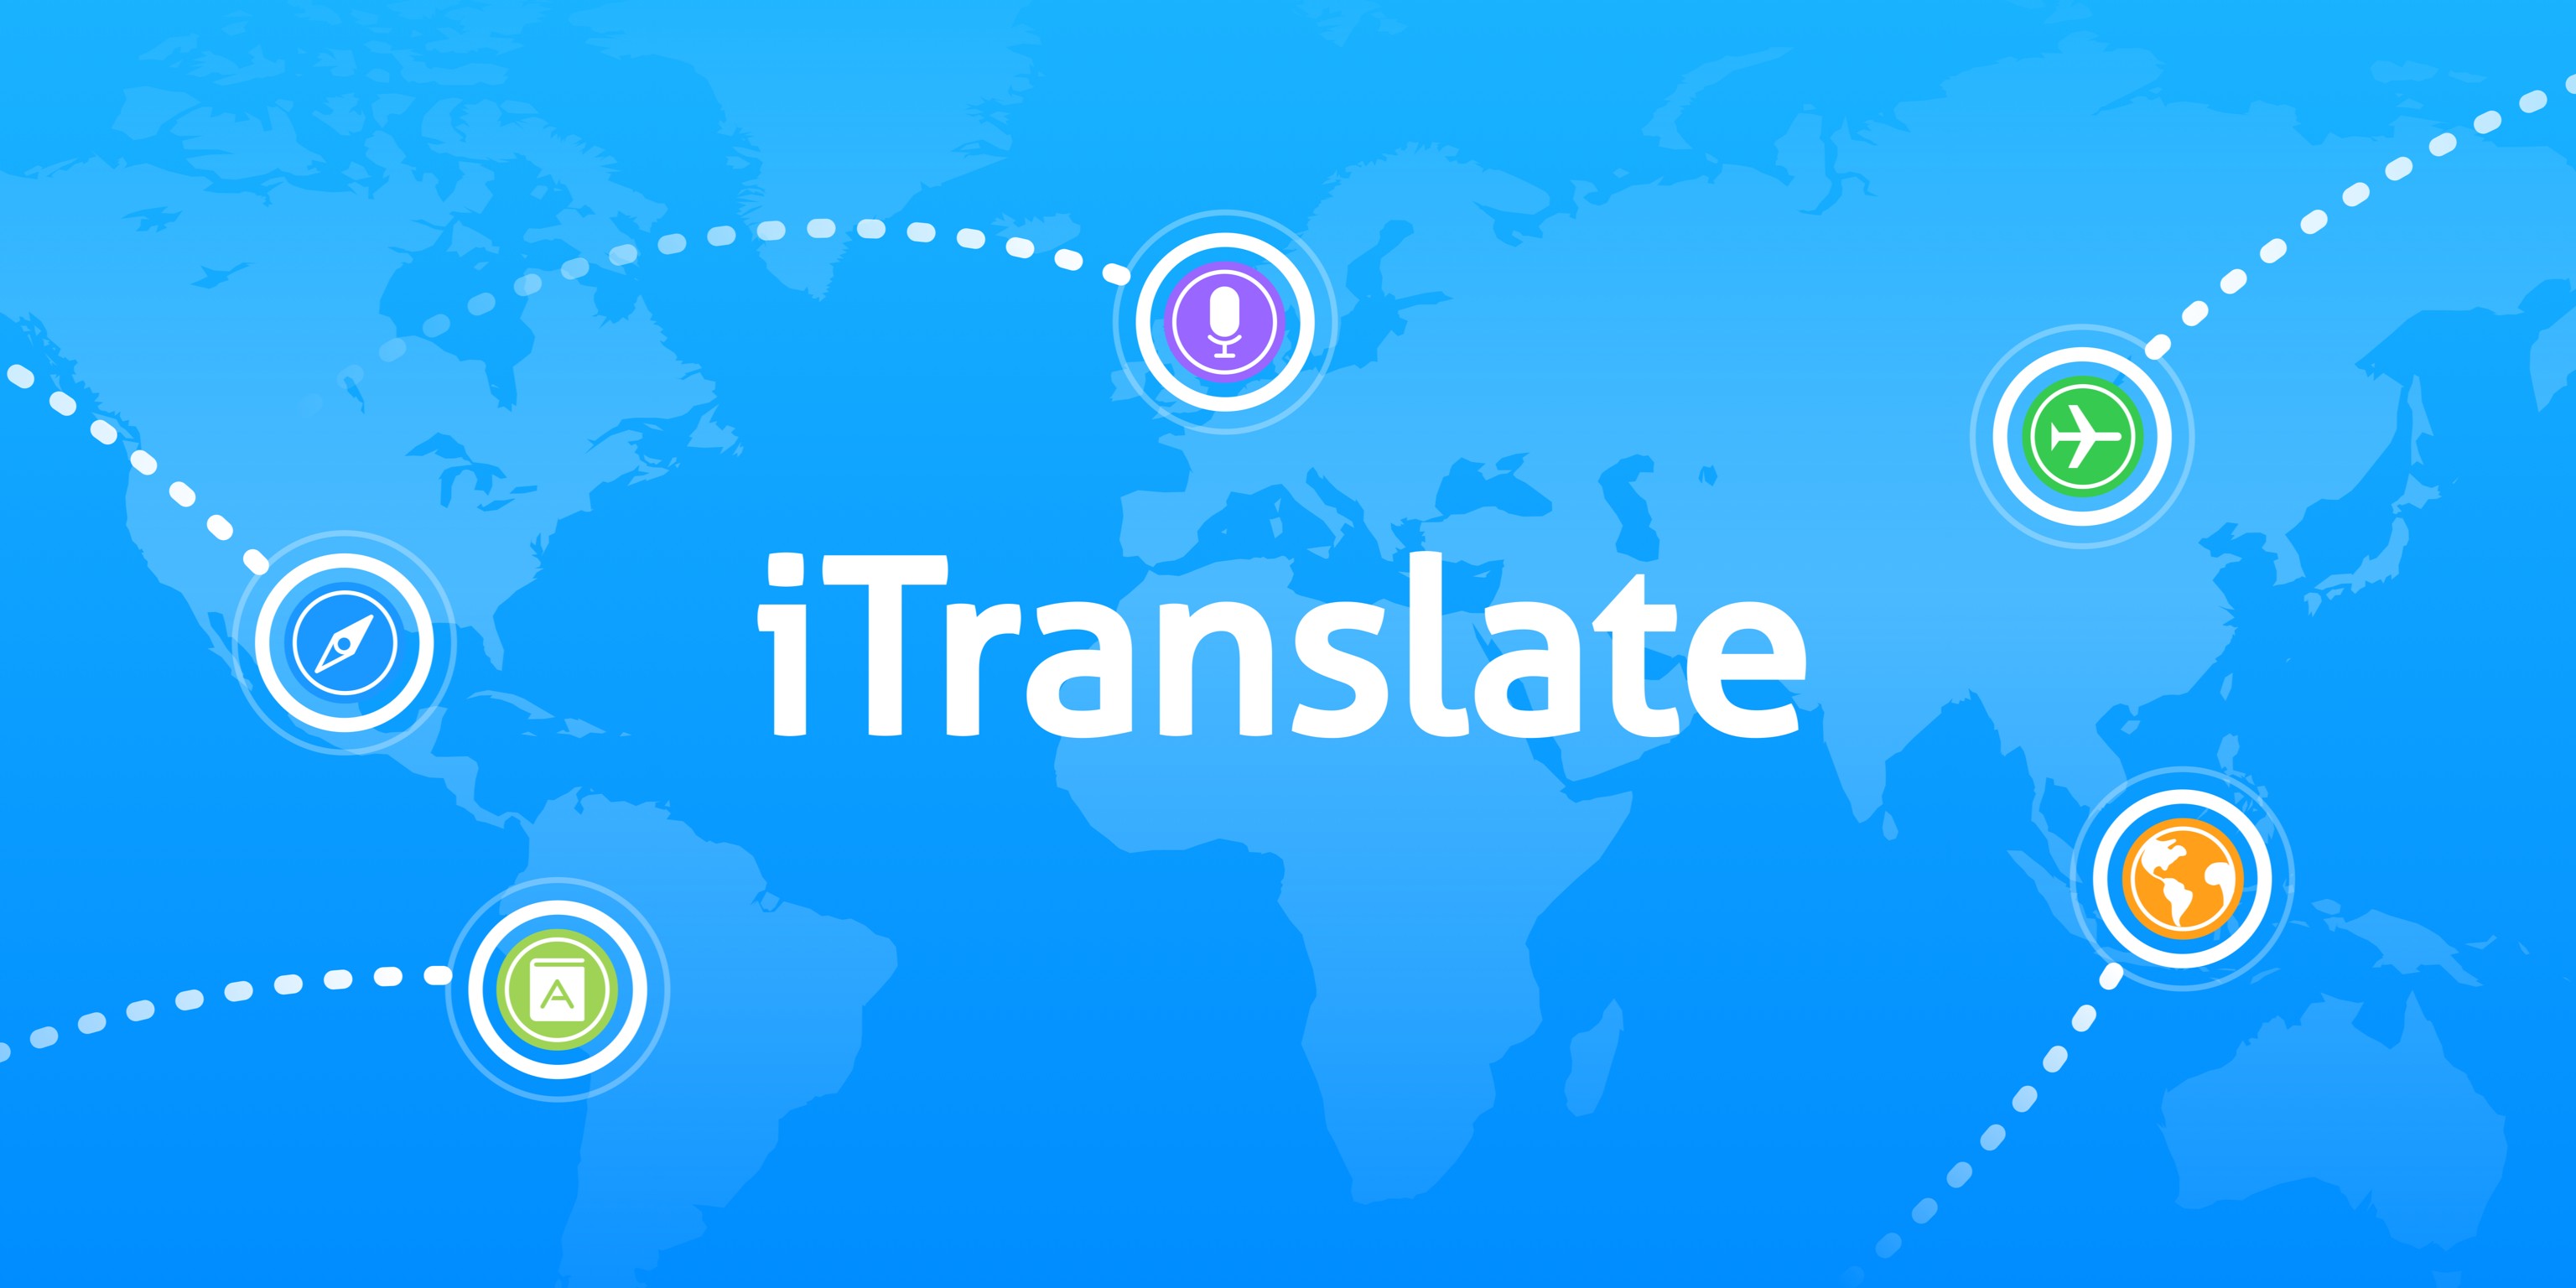 Find me перевести. ITRANSLATE. I Translate. Translate. 3. ITRANSLATE.